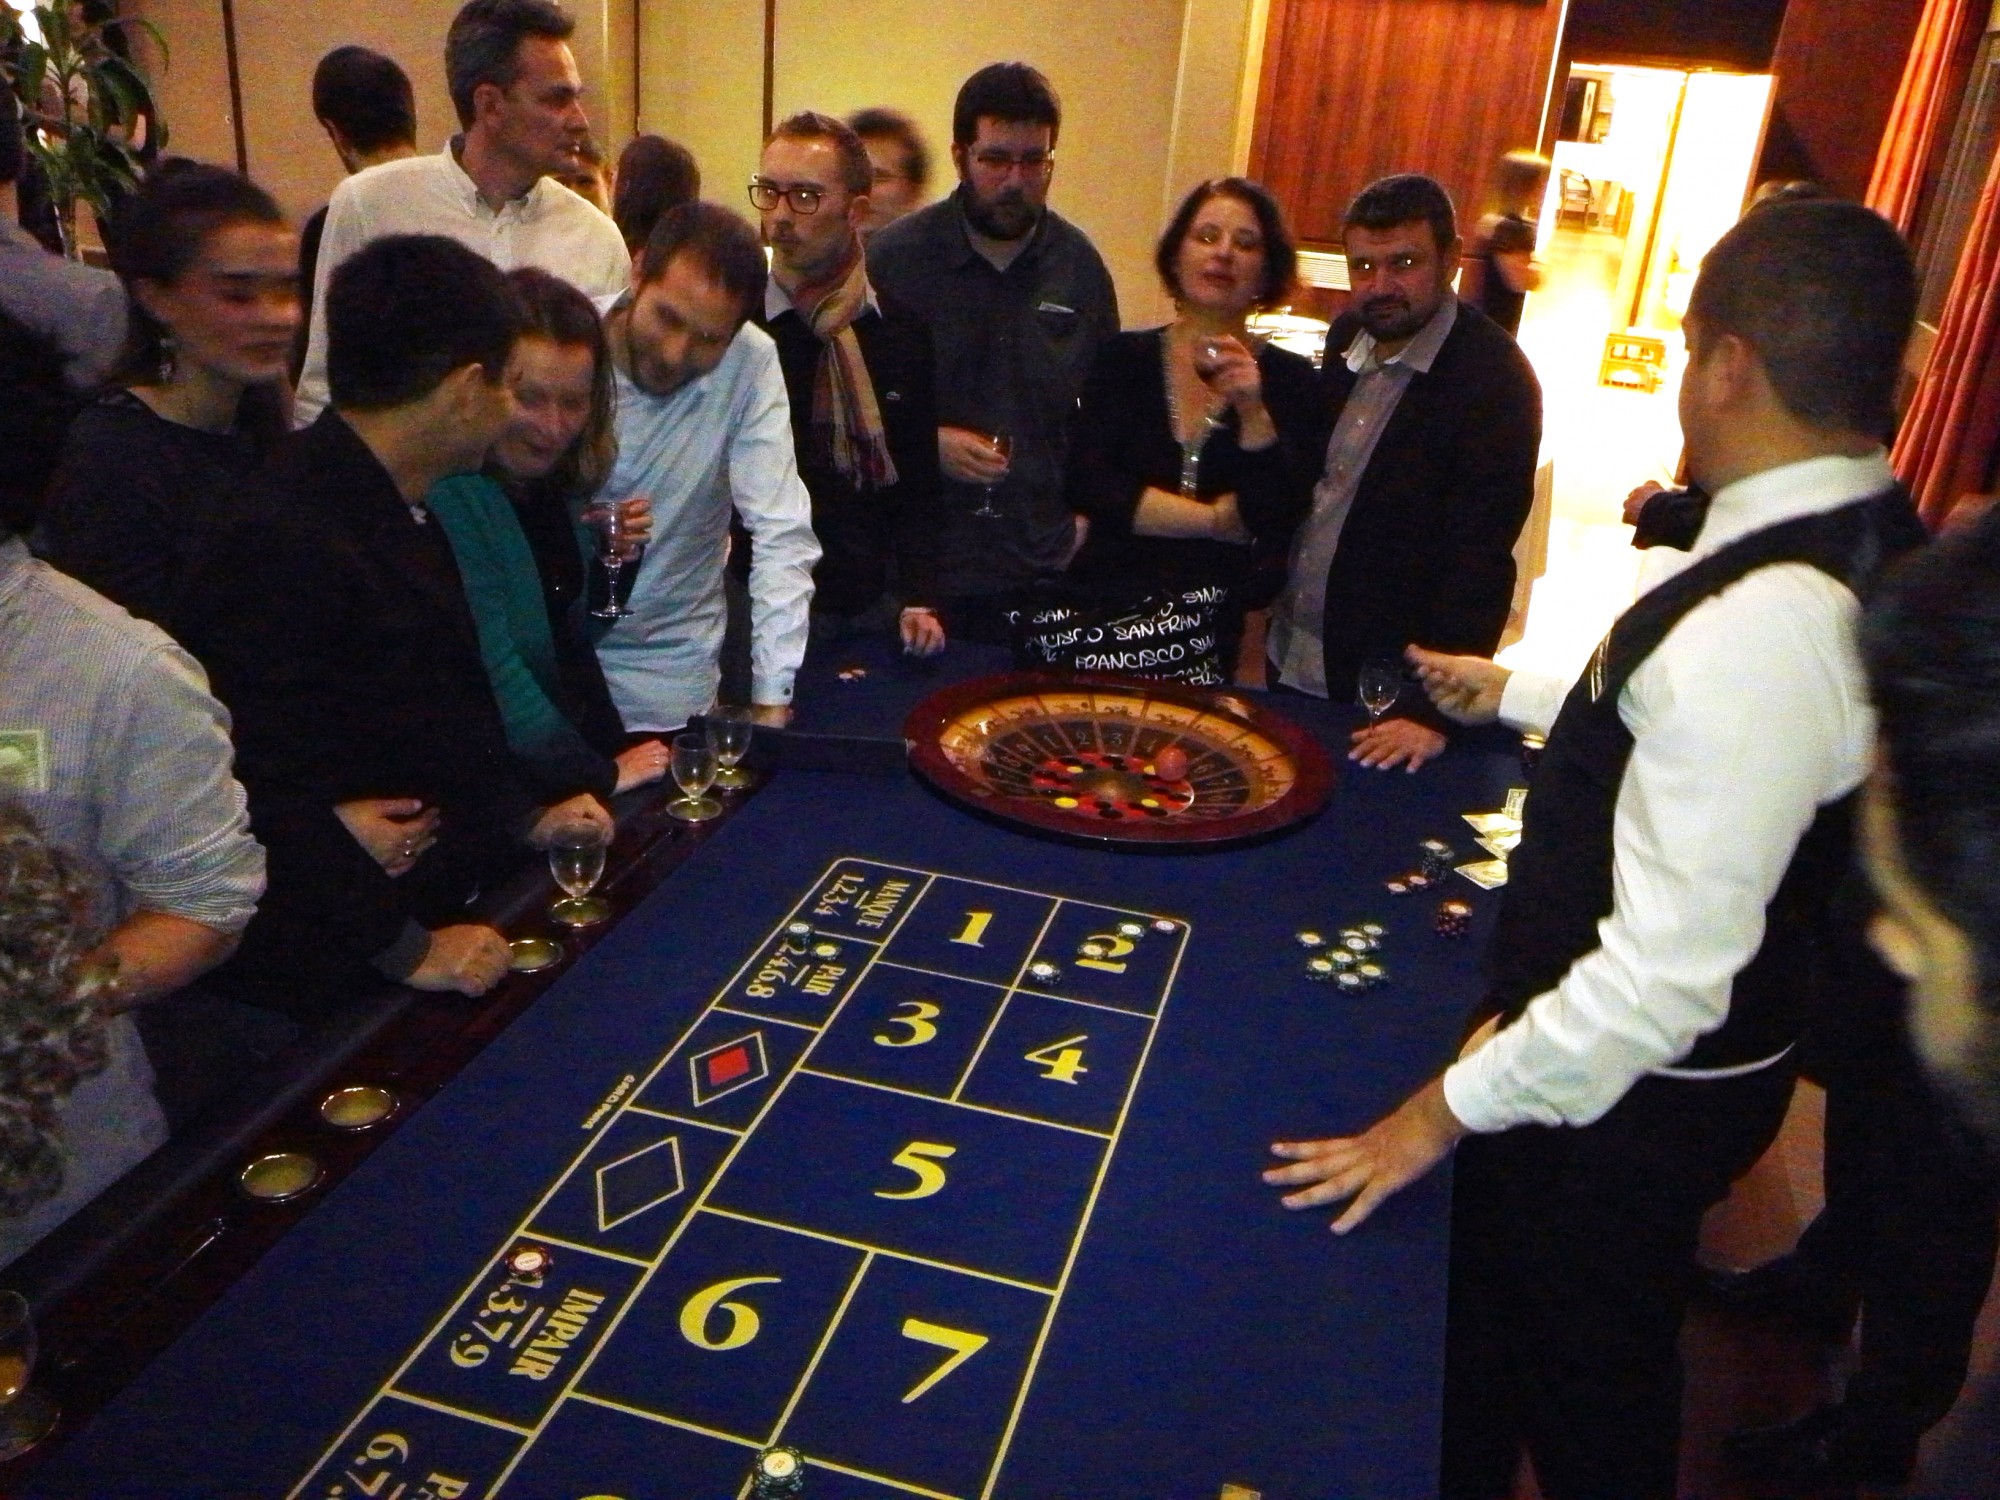 La table de casino boule permet d'accueillir de nombreux invités et se révèle intéressante dans l'organisation de grands séminaires